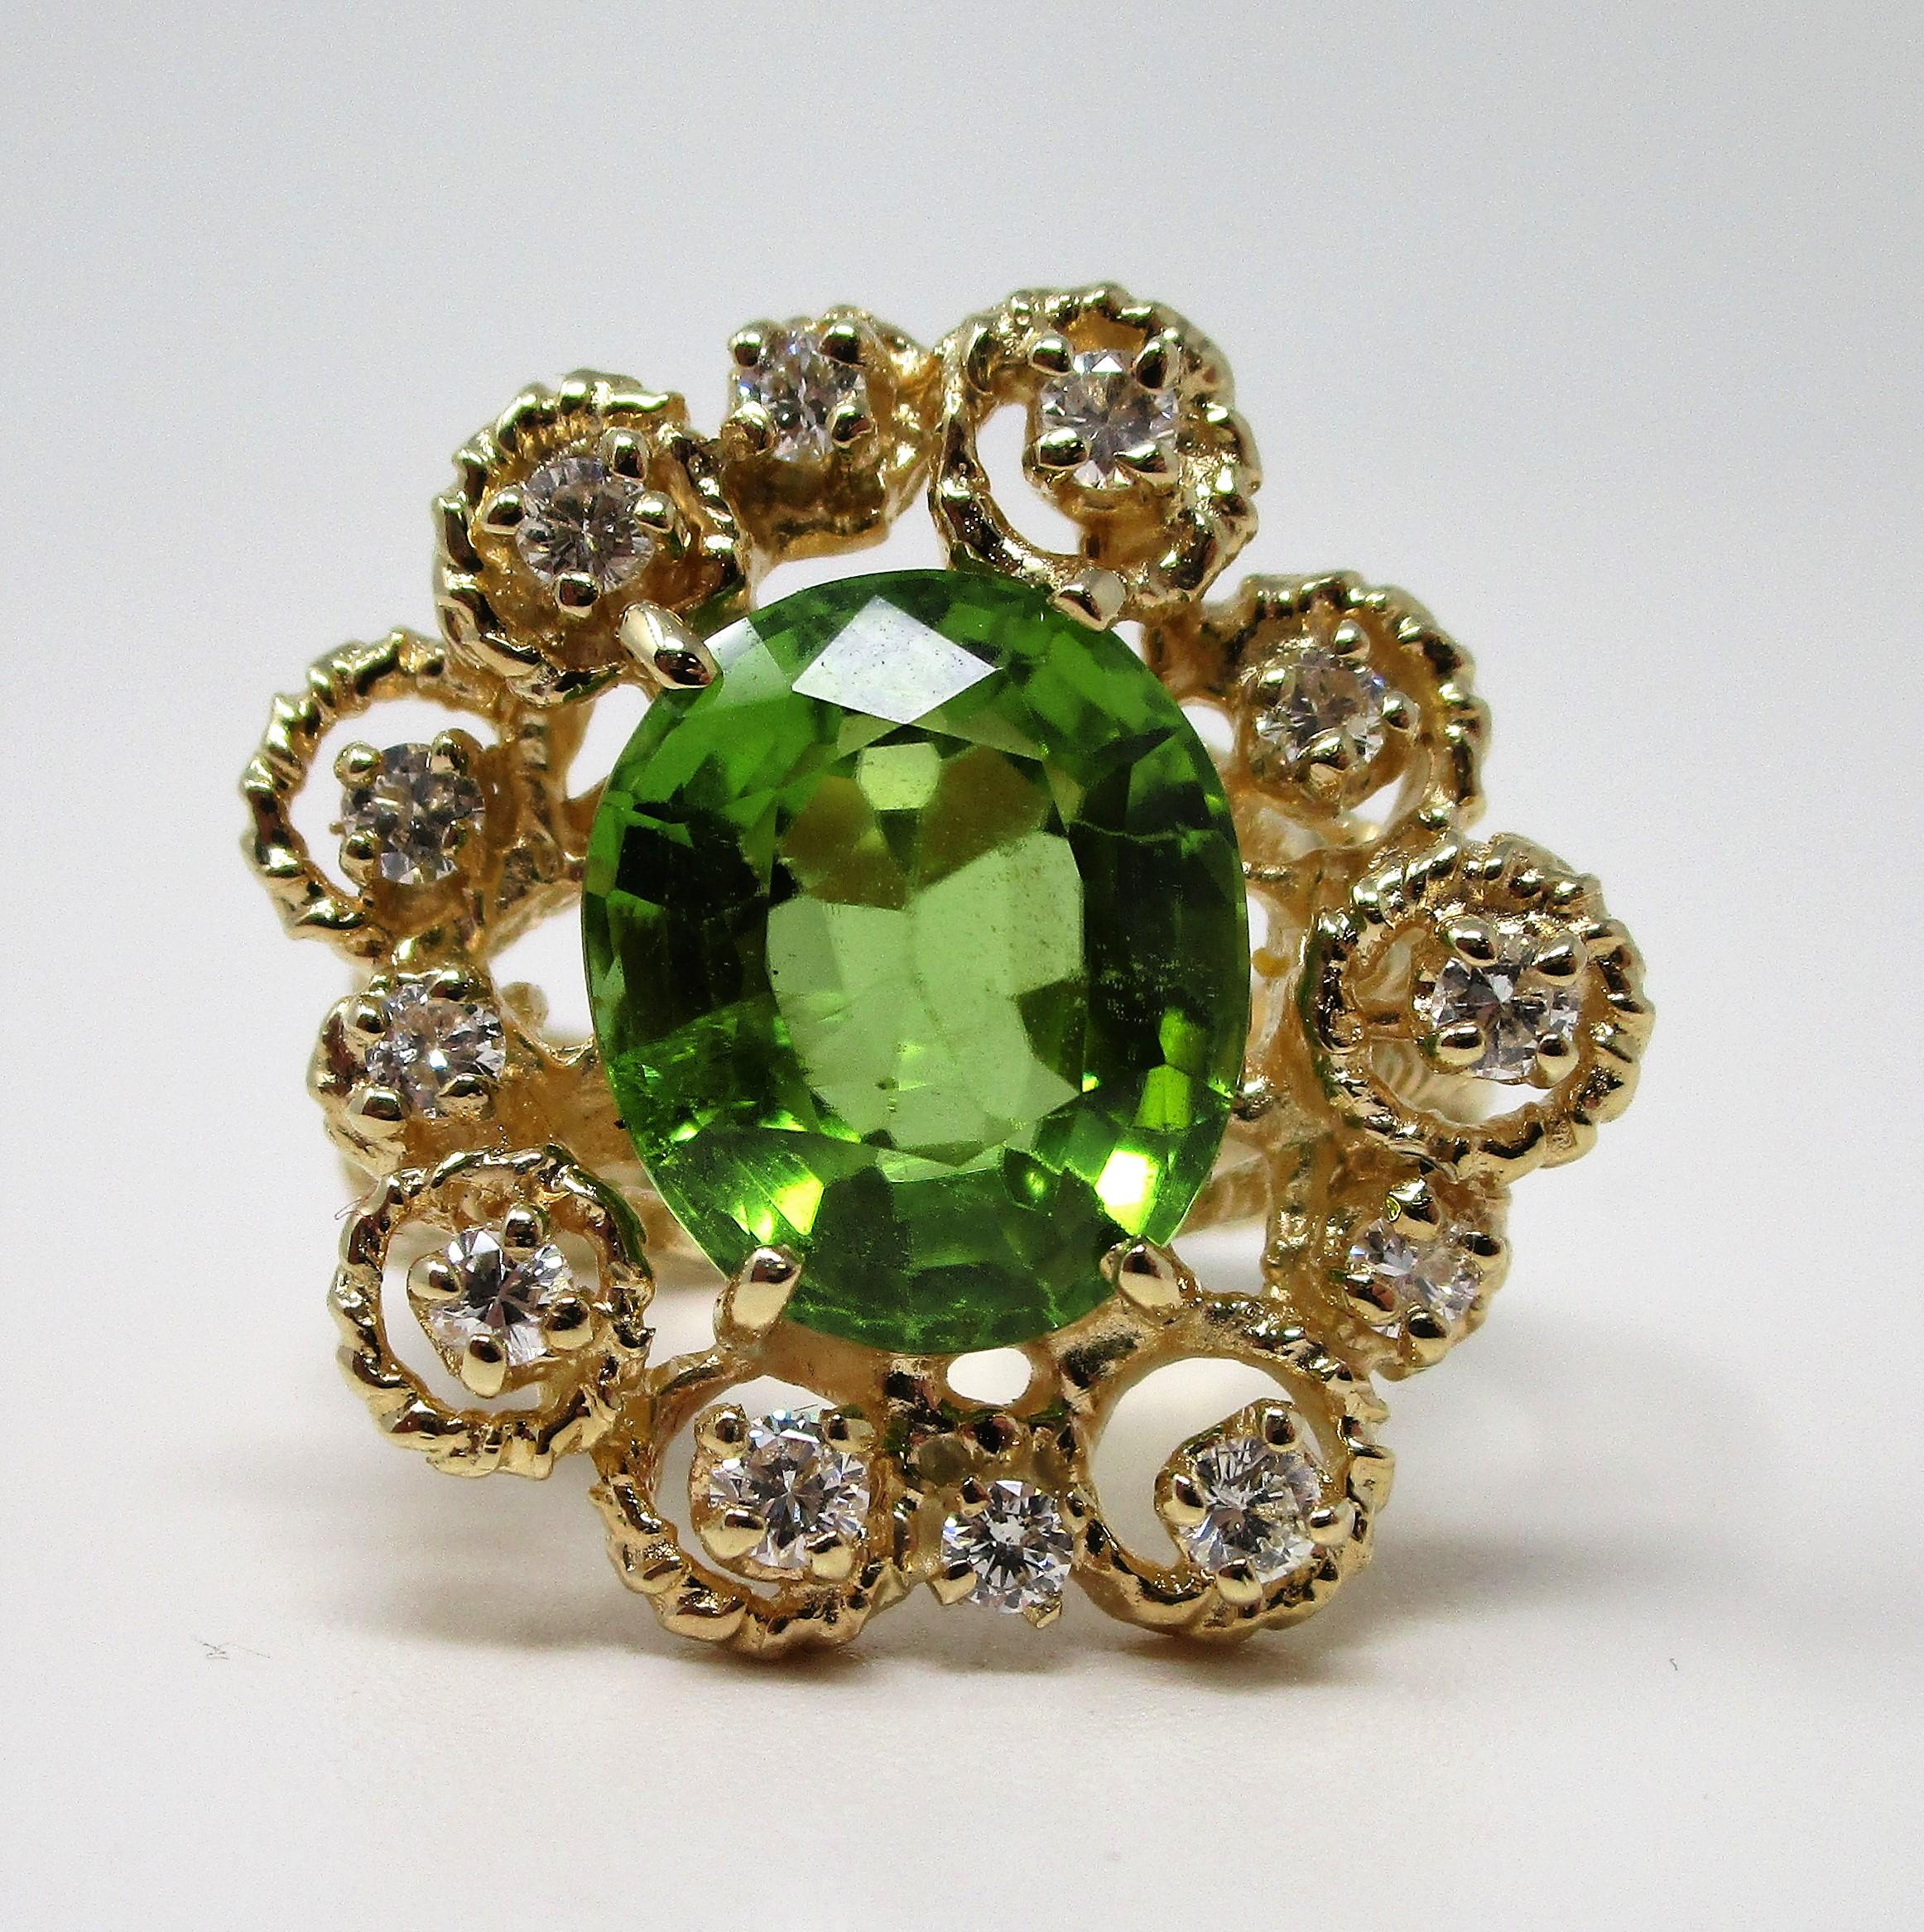 Wunderschöner Peridot von 5,52 Karat, umgeben von 0,50 Karat Diamanten in strukturiertem 14-karätigem Gelbgold.  Dieser fröhliche Ring wiegt 9,5 Gramm und hat die Größe 6 1/2.